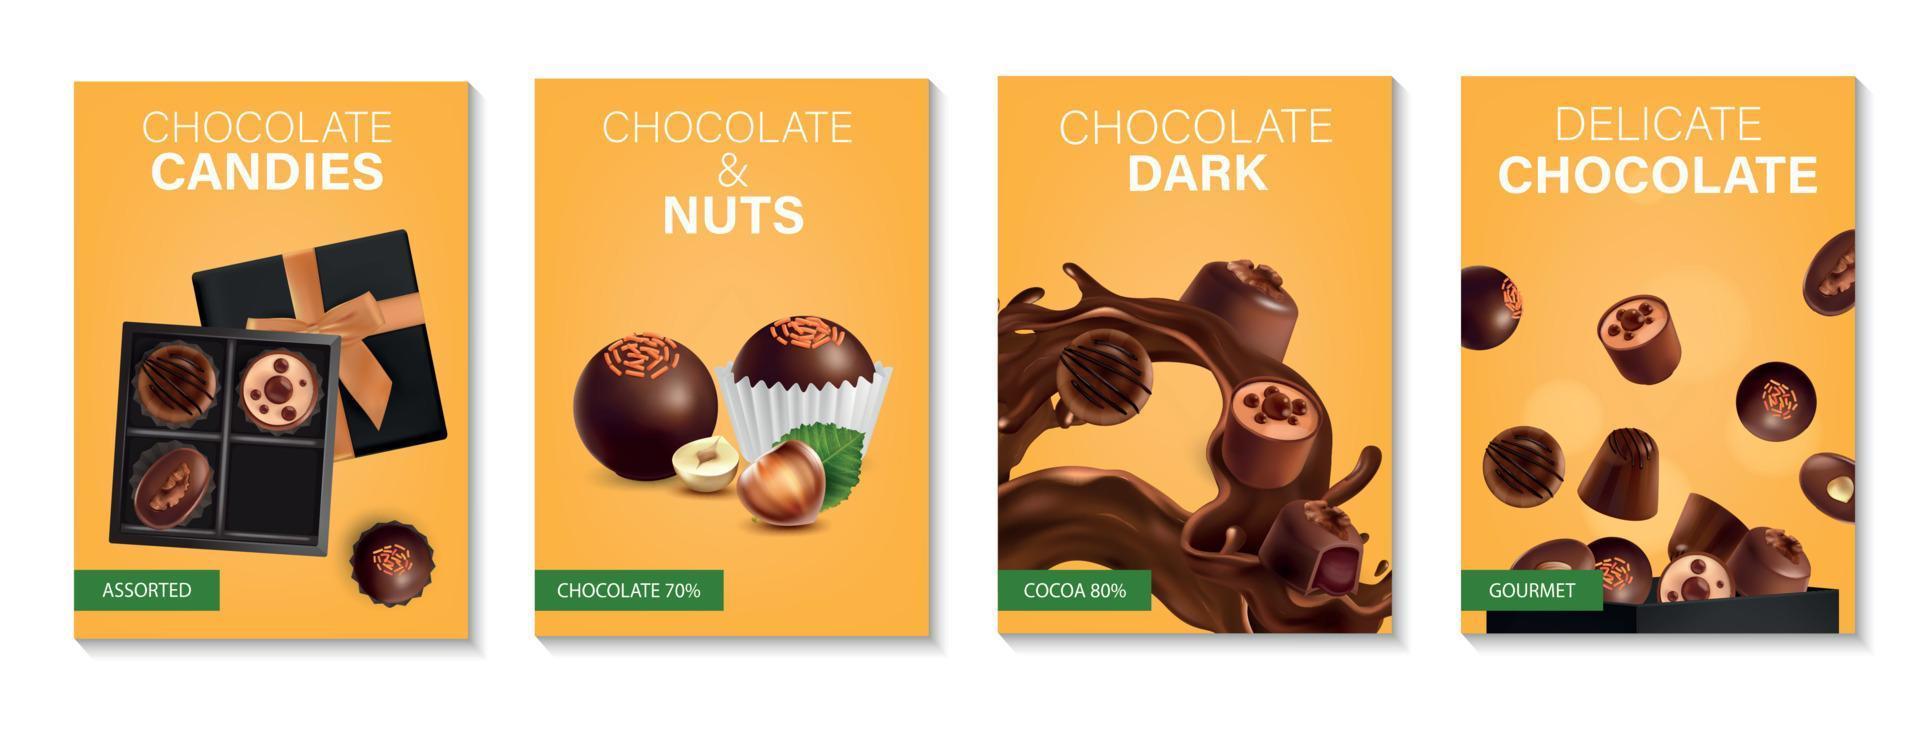 chocolade poster realistische set vector